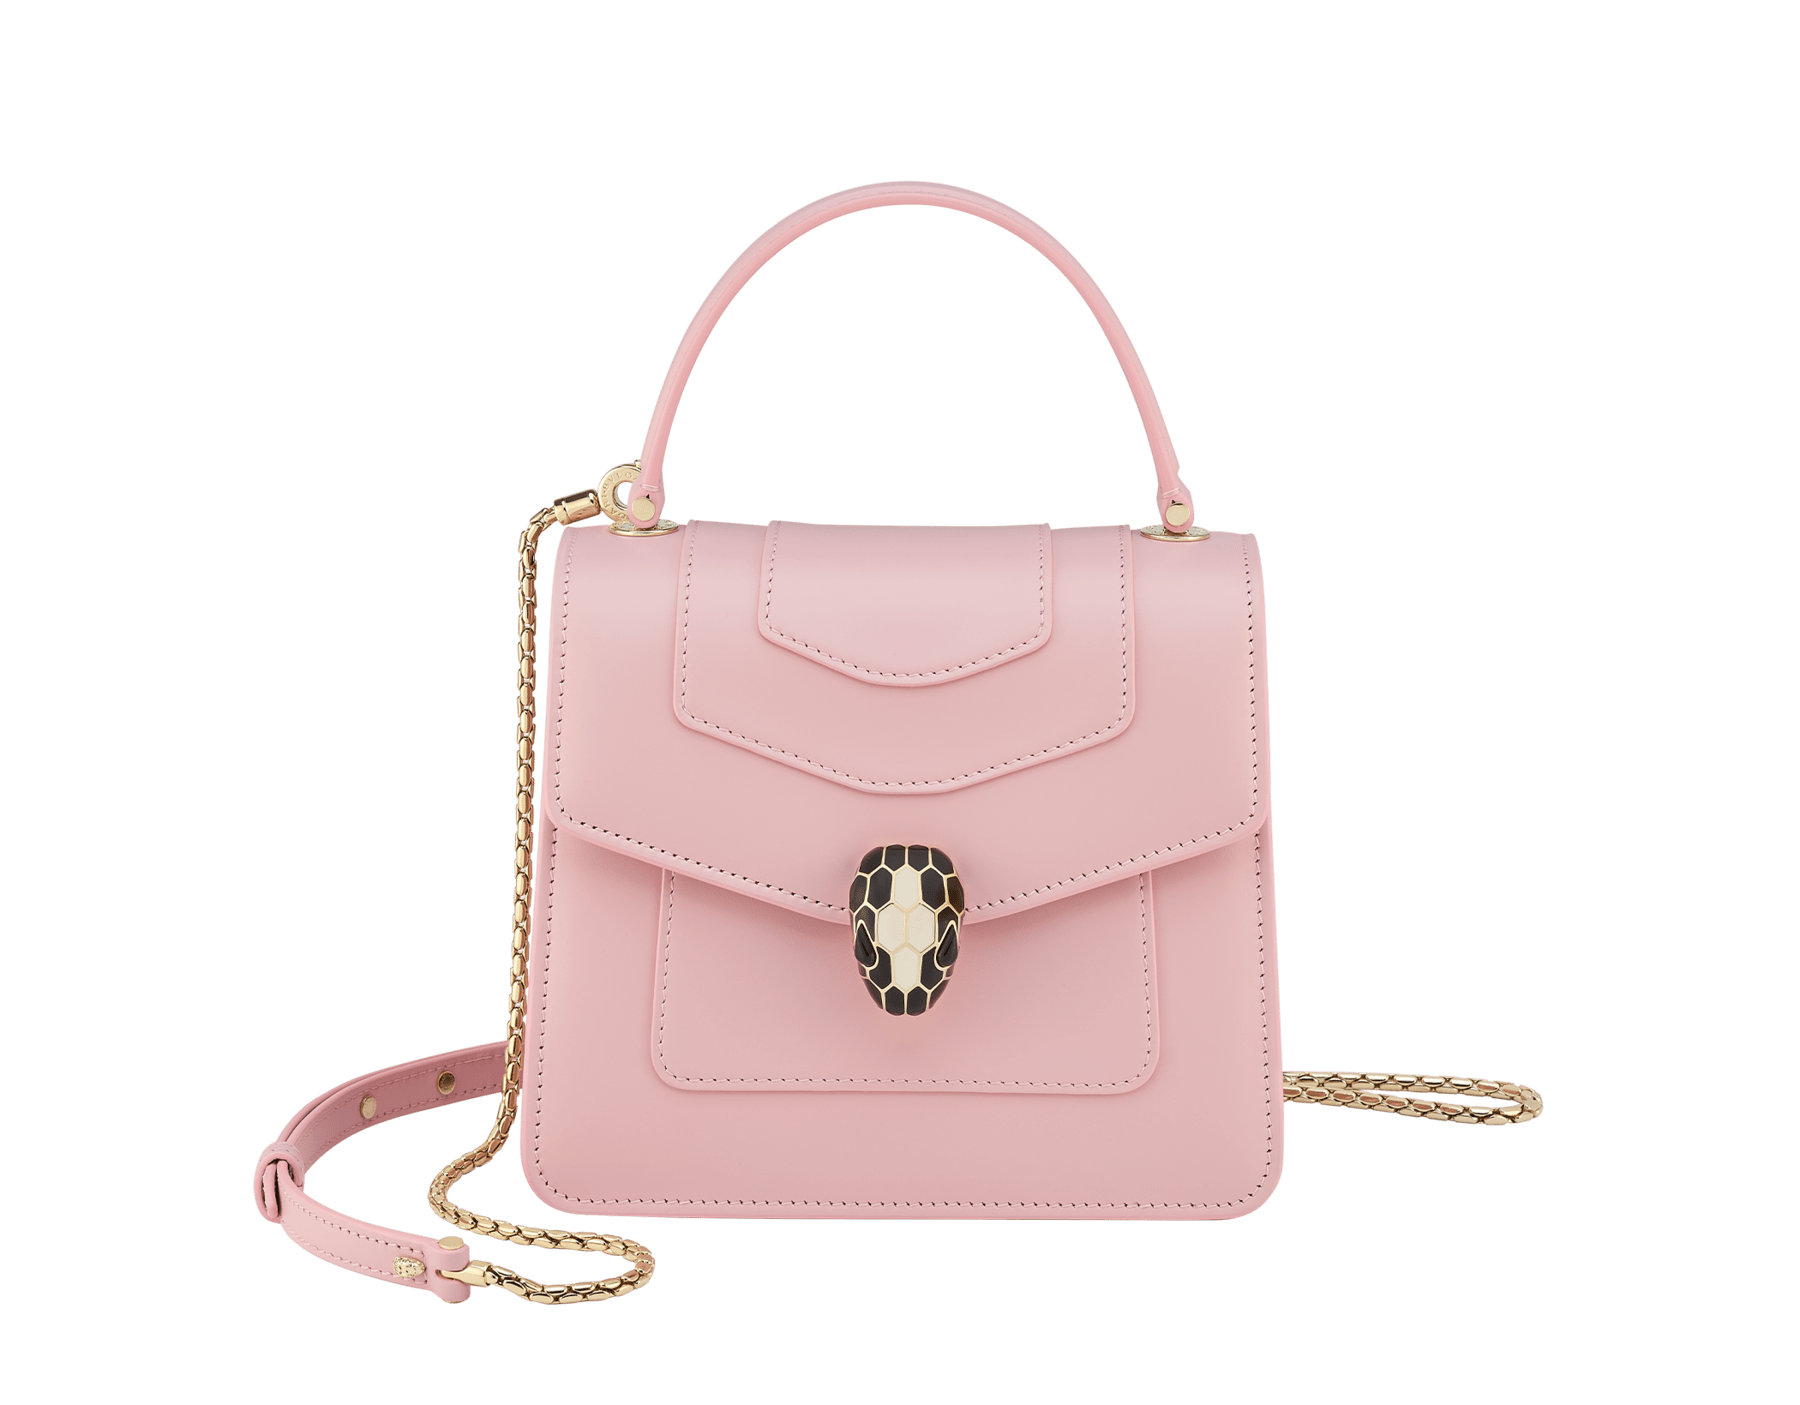 BVLGARI Serpenti Forever Calf-Leather Shoulder Bag in Pink